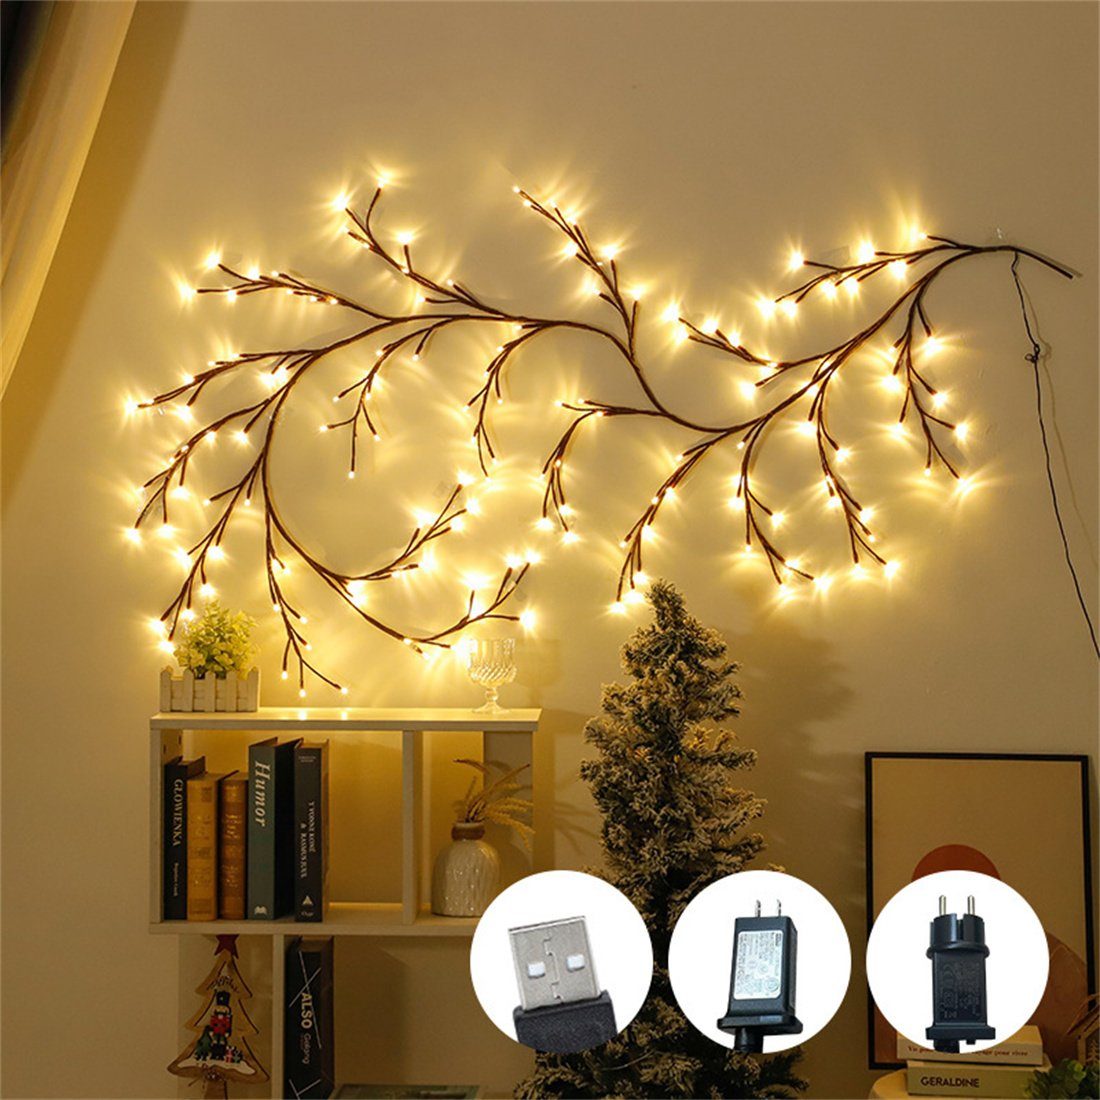 DAYUT LED led lichter für wohnzimmer weihnachtsdekoration Dekofigur baum zweig rattan